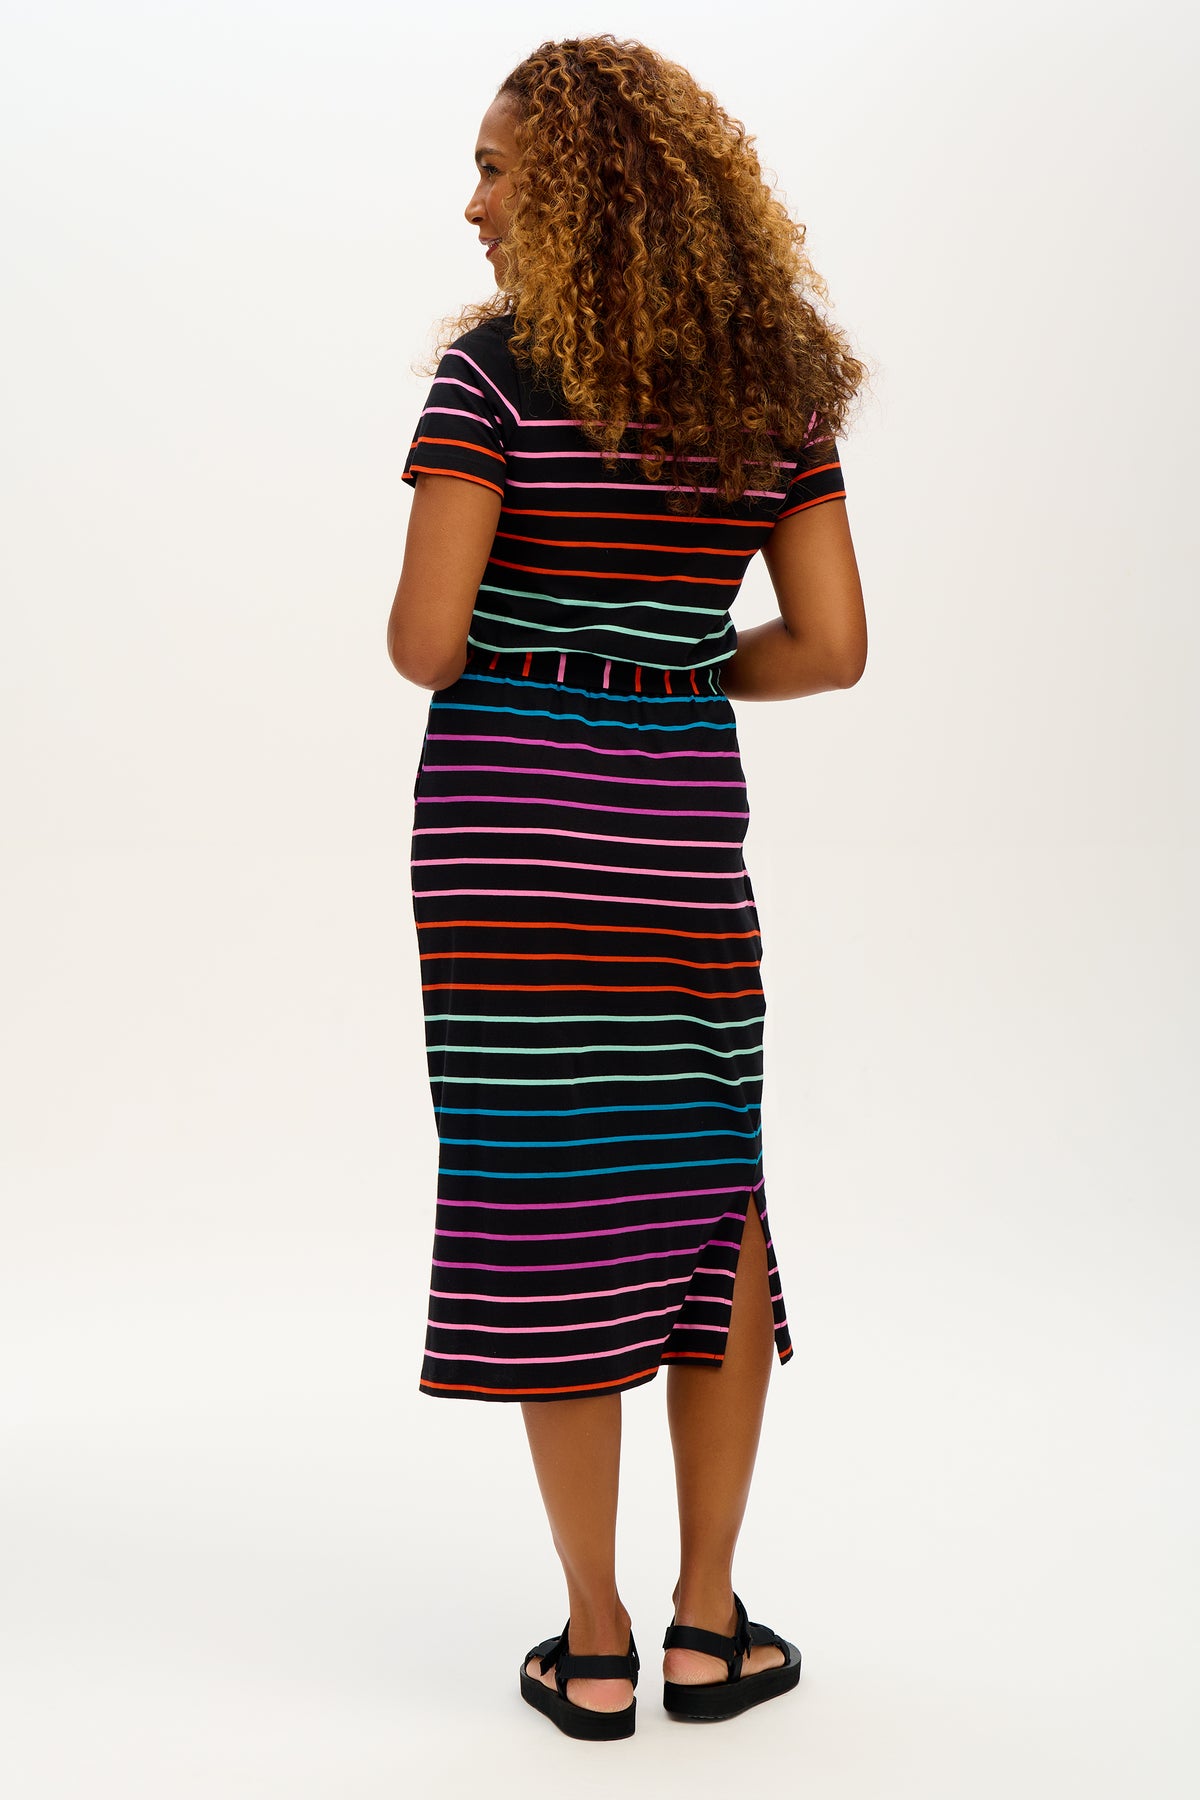 Sugarhill - Flissy Jersey Midi Dress - Black Stripe